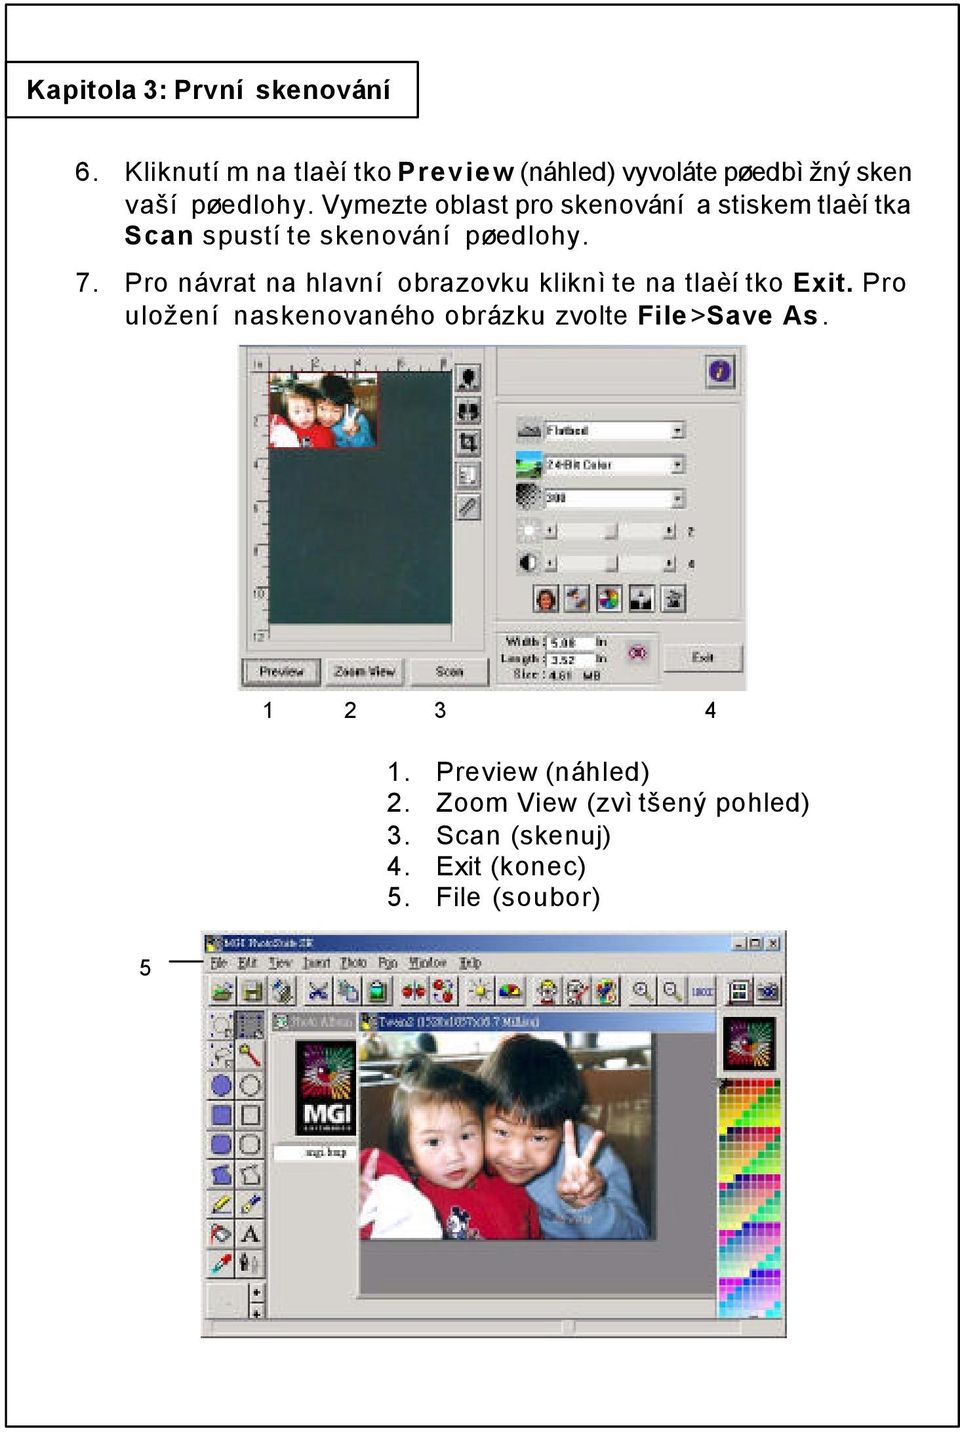 Vymezte oblast pro skenování a stiskem tlaèítka Scan spustíte skenování pøedlohy. 7.